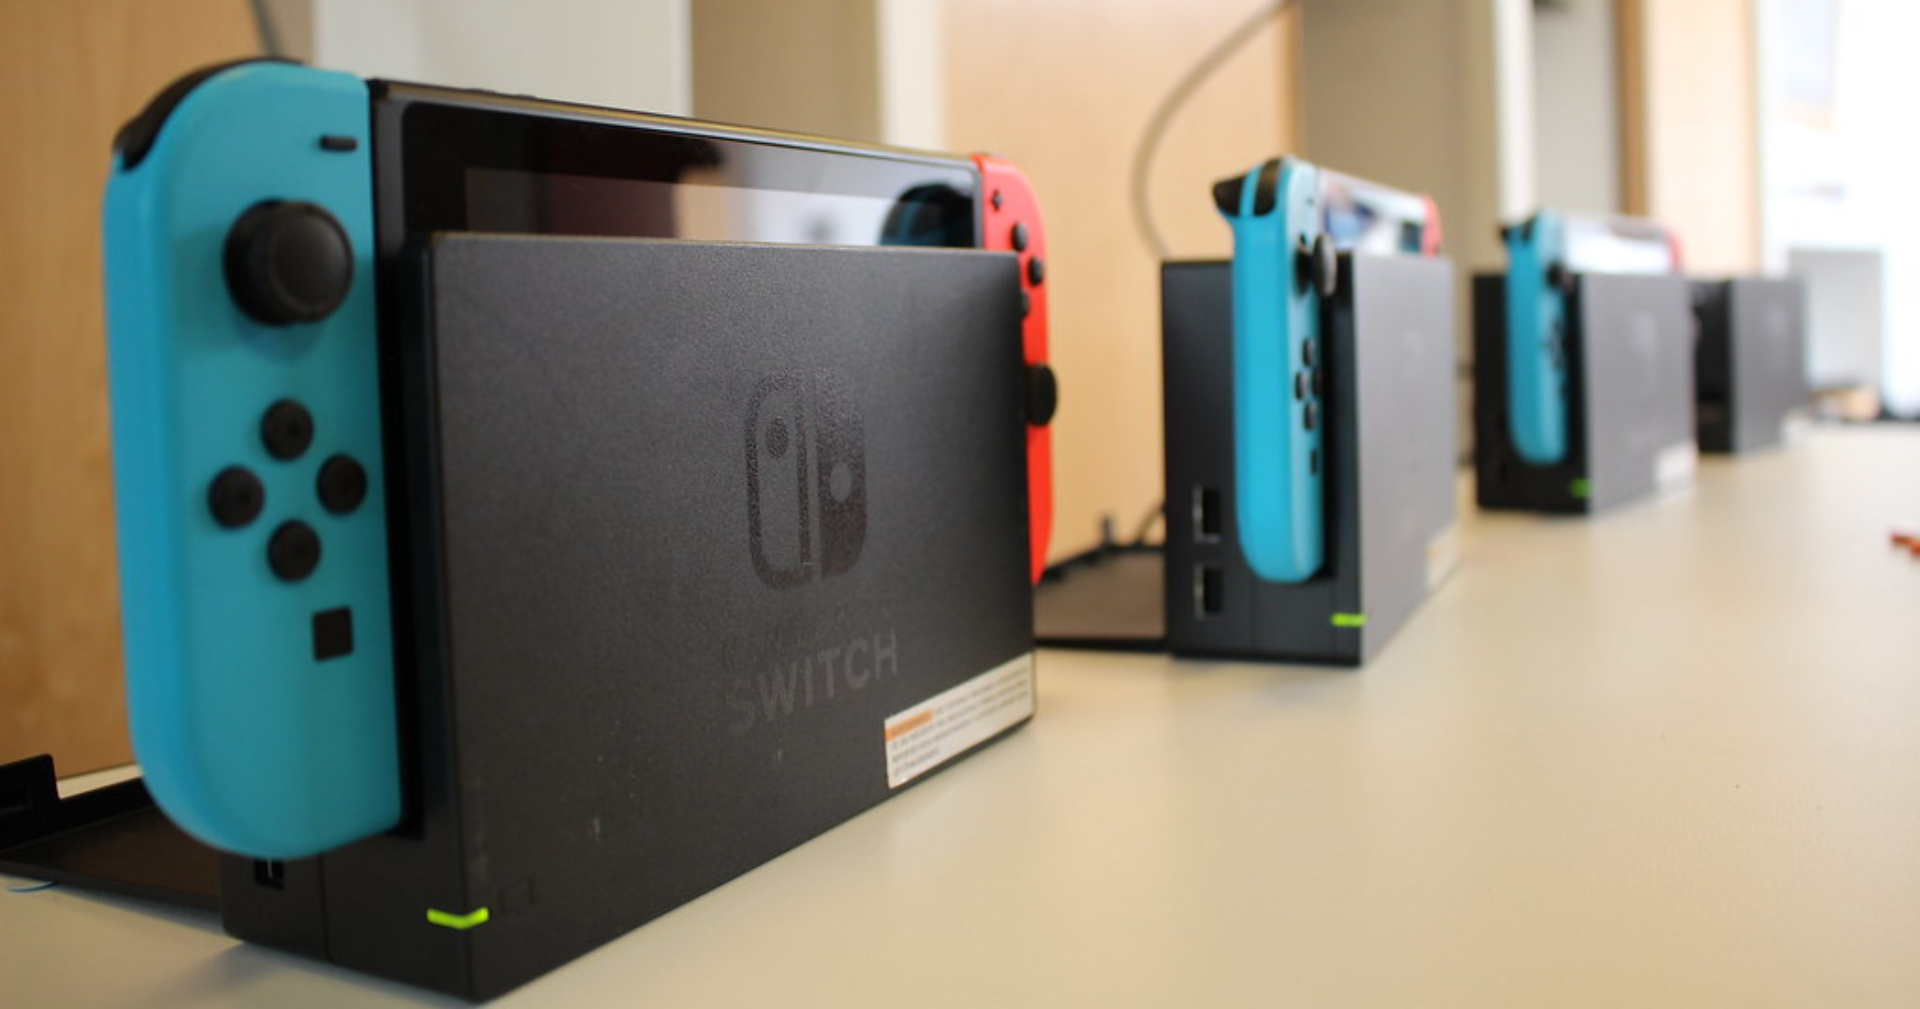 หรือรุ่นใหม่จะมาจริง! ชิปเซ็ตรุ่นปัจจุบันของ Nintendo Switch จ่อหยุดผลิตในปีนี้